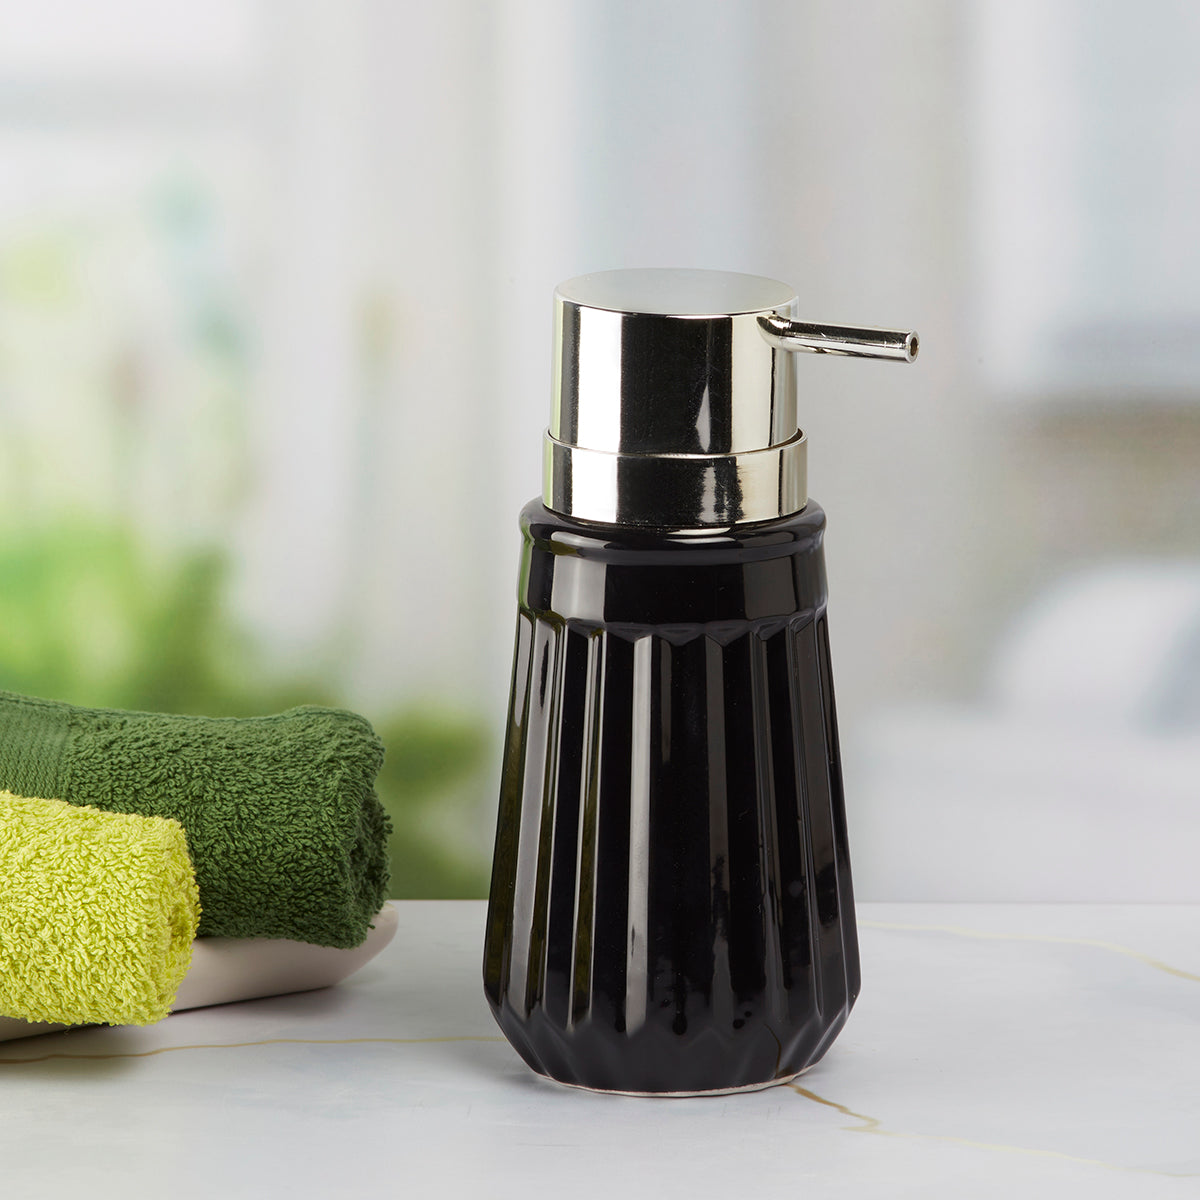 Kookee Ceramic Soap Dispenser for Bathroom handwash, refillable pump bottle for Kitchen hand wash basin, Set of 1, Black (6036)